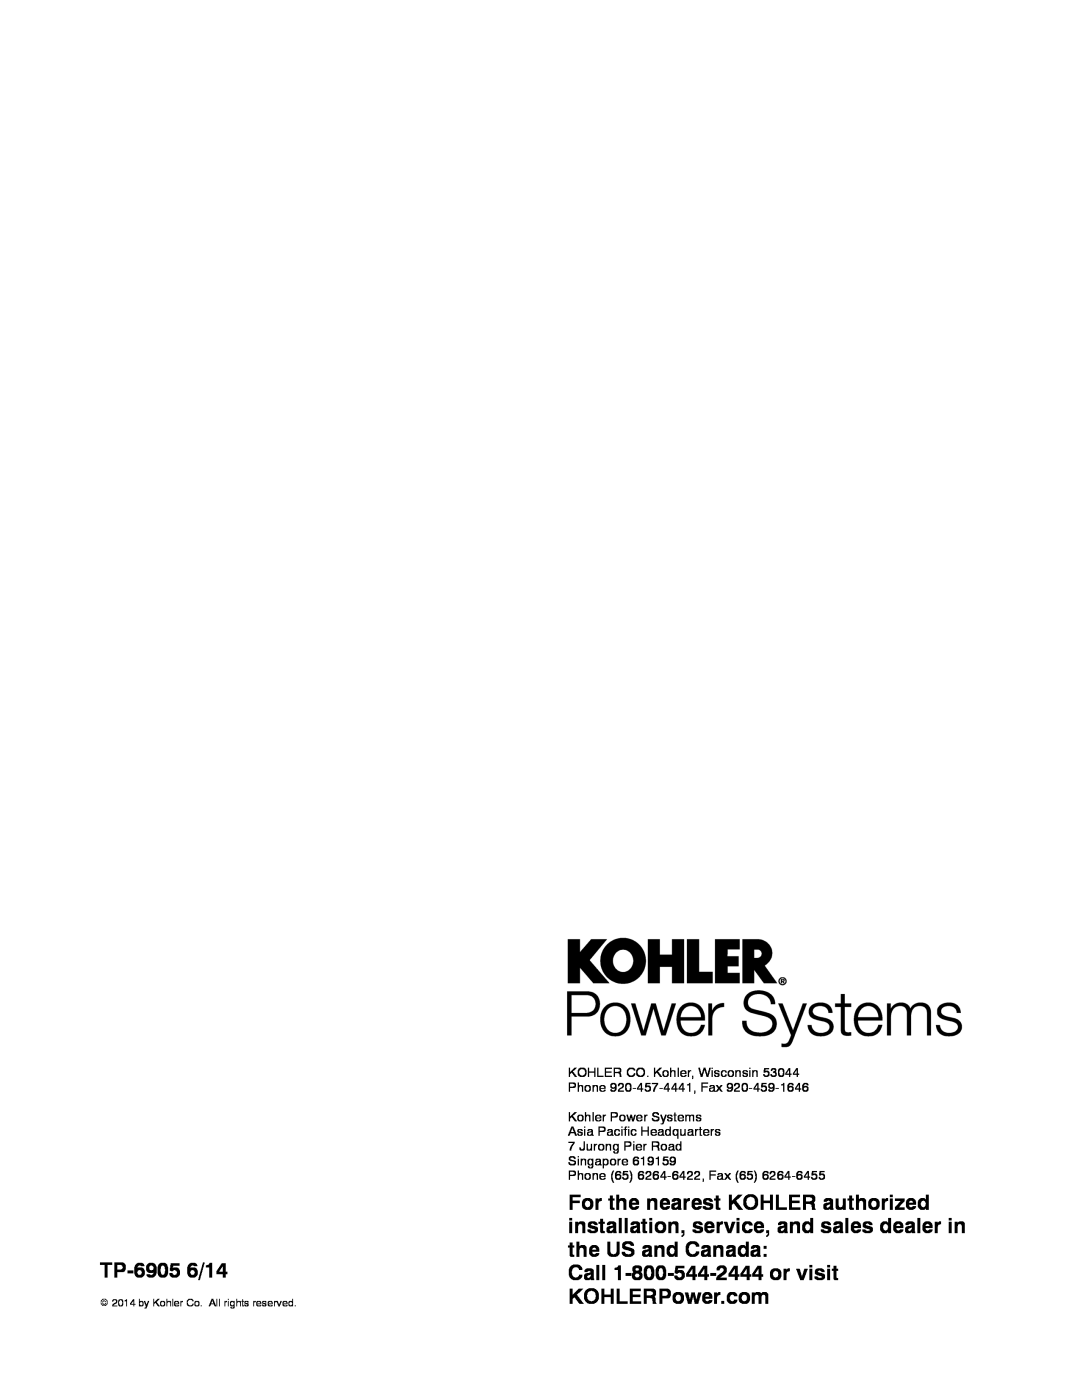 Kohler 24RCL manual Call 1-800-544-2444or visit KOHLERPower.com, TP-69056/14, KOHLER CO. Kohler, Wisconsin 